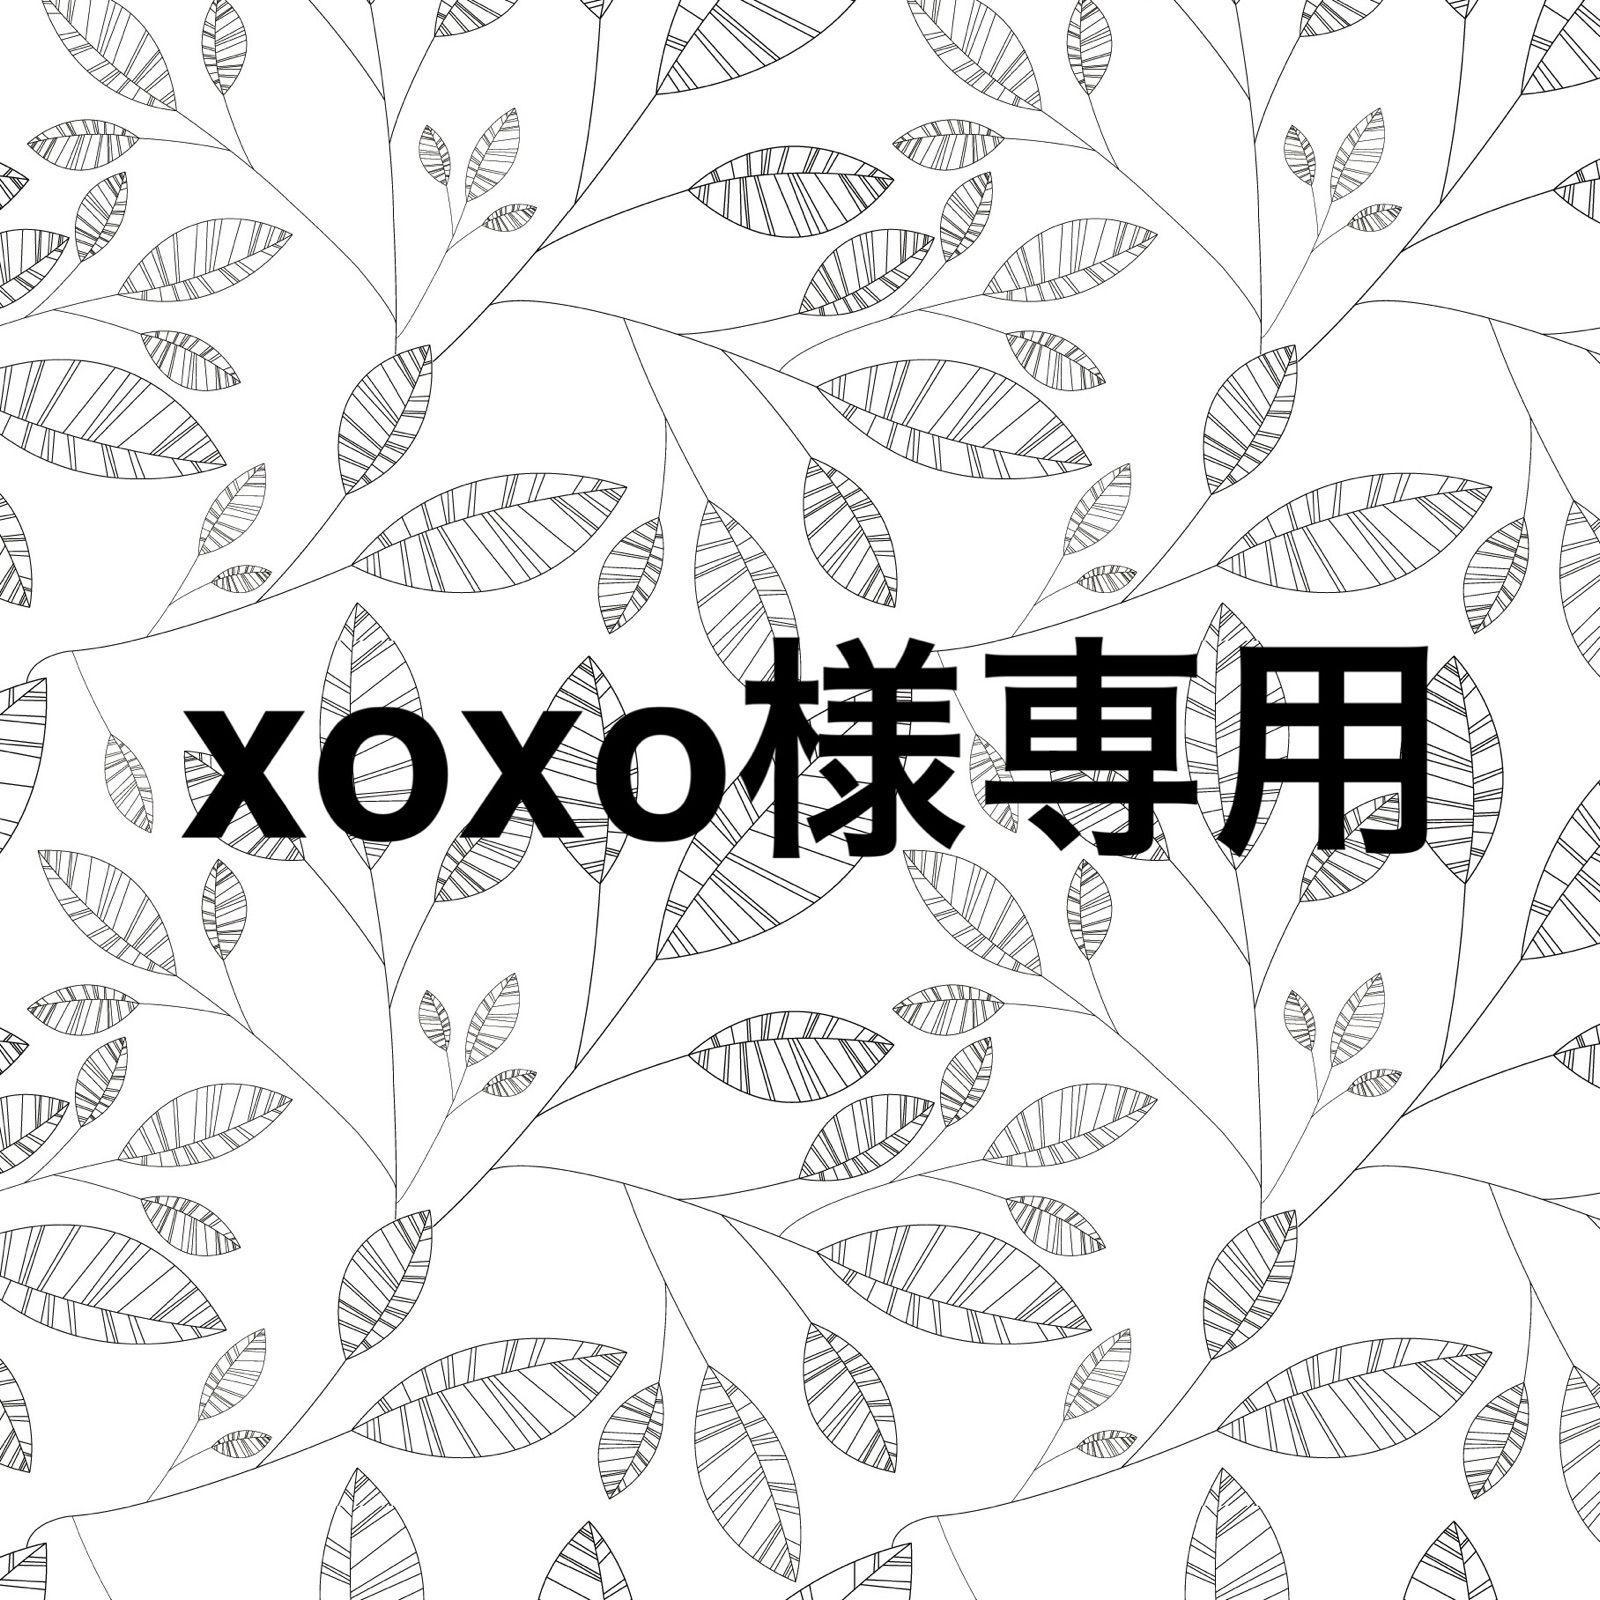 xoxo様専用ページ - パーツショップ hanahana - メルカリ